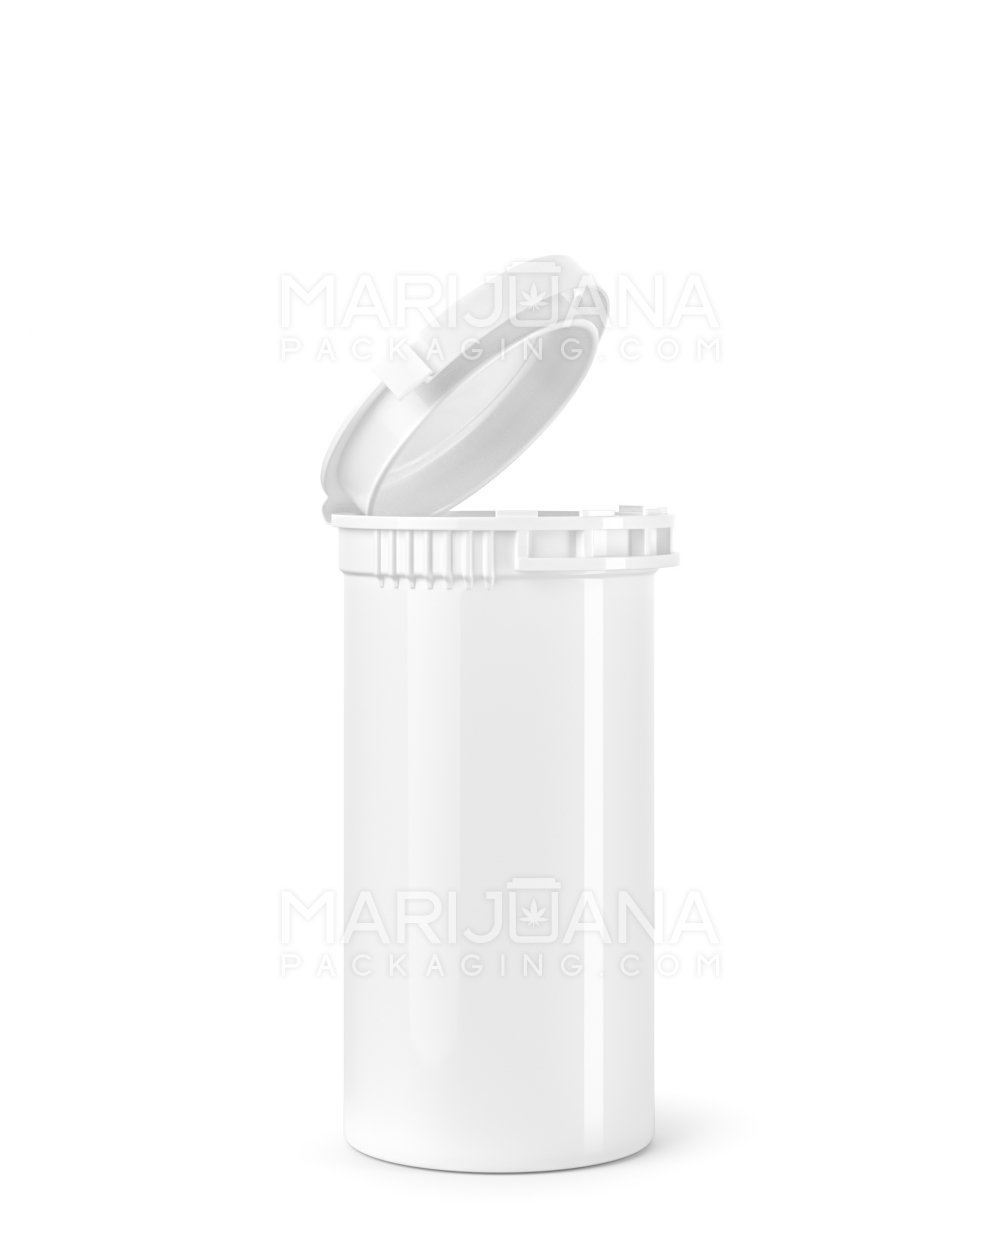 Child Resistant & Tamper Evident Opaque White Pop Top Bottles | 13dr - 2g | Sample - 1